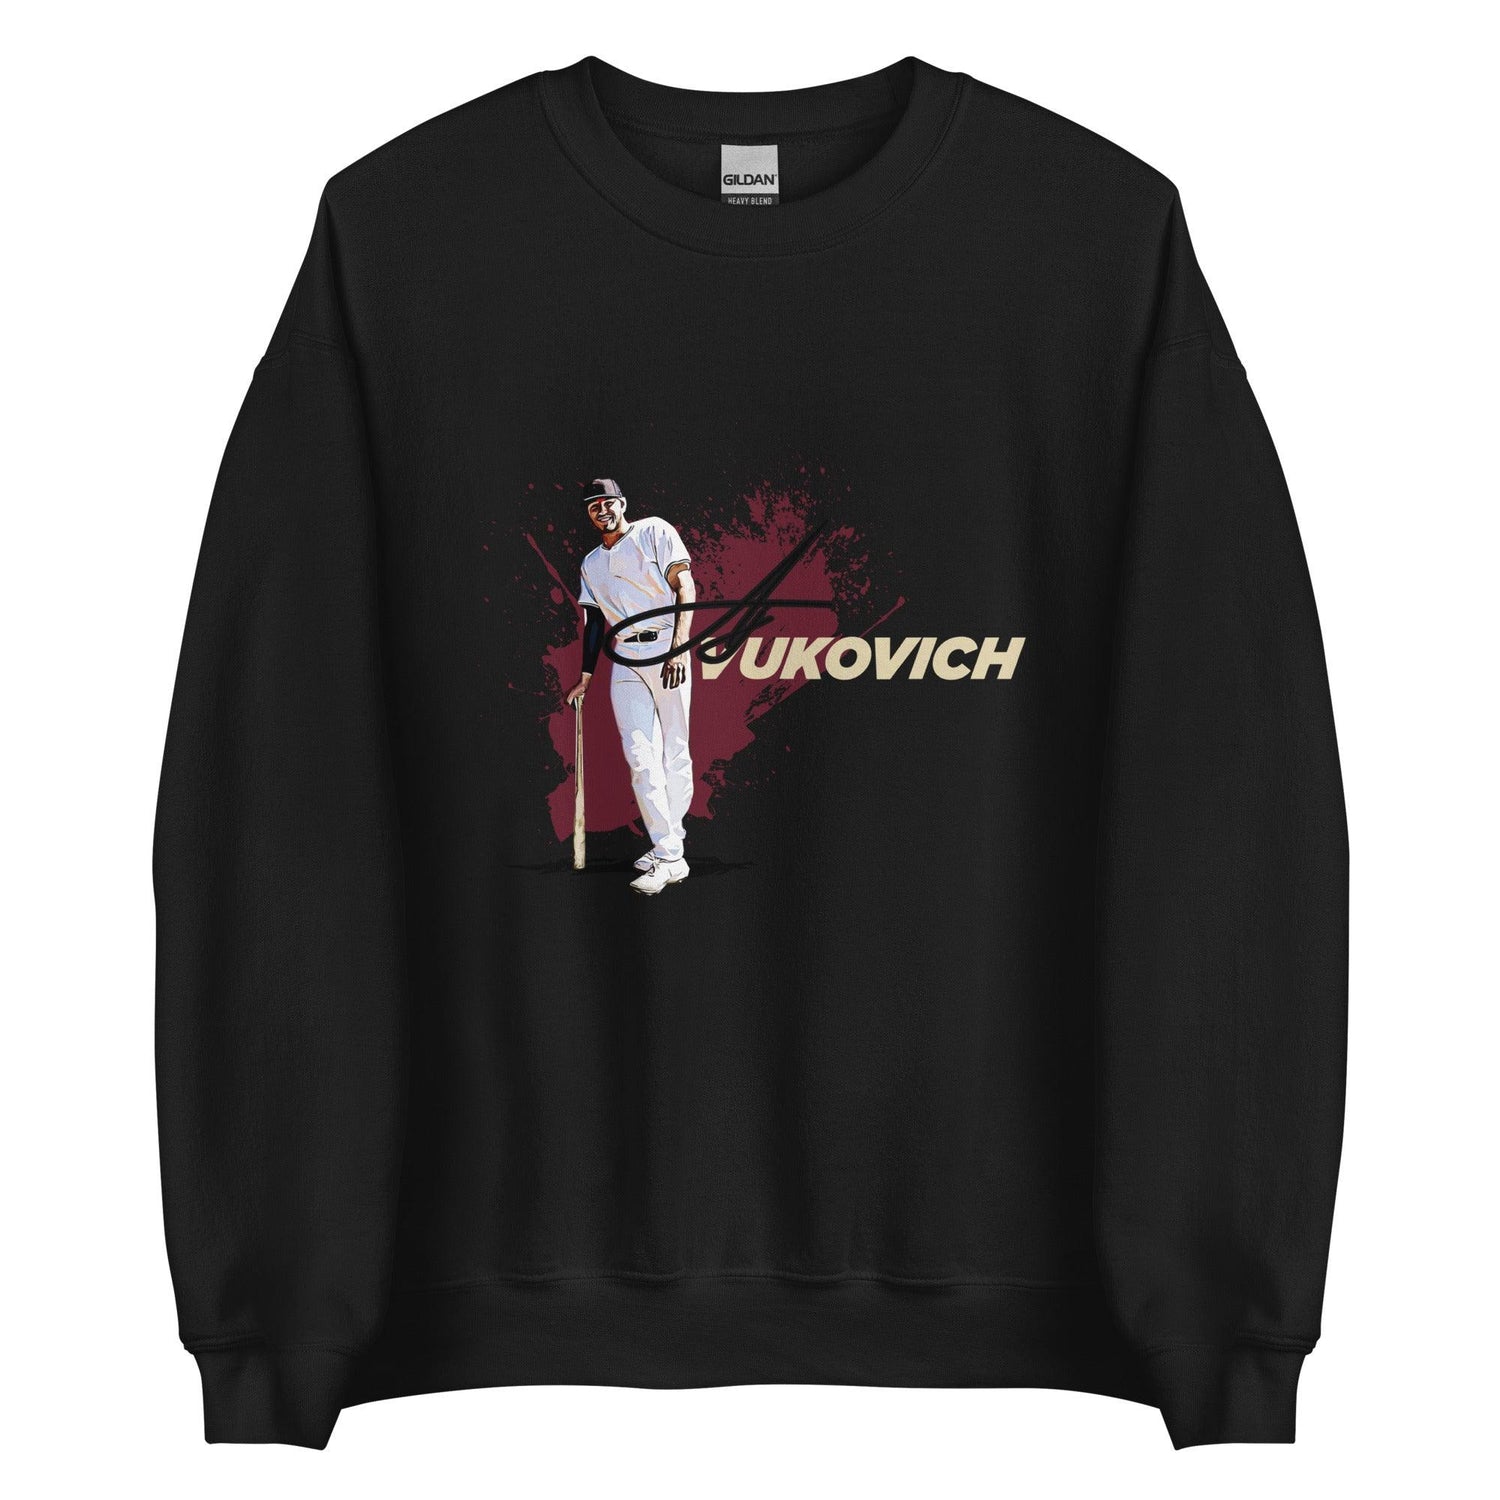 AJ Vukovich “Primetime” Sweatshirt - Fan Arch